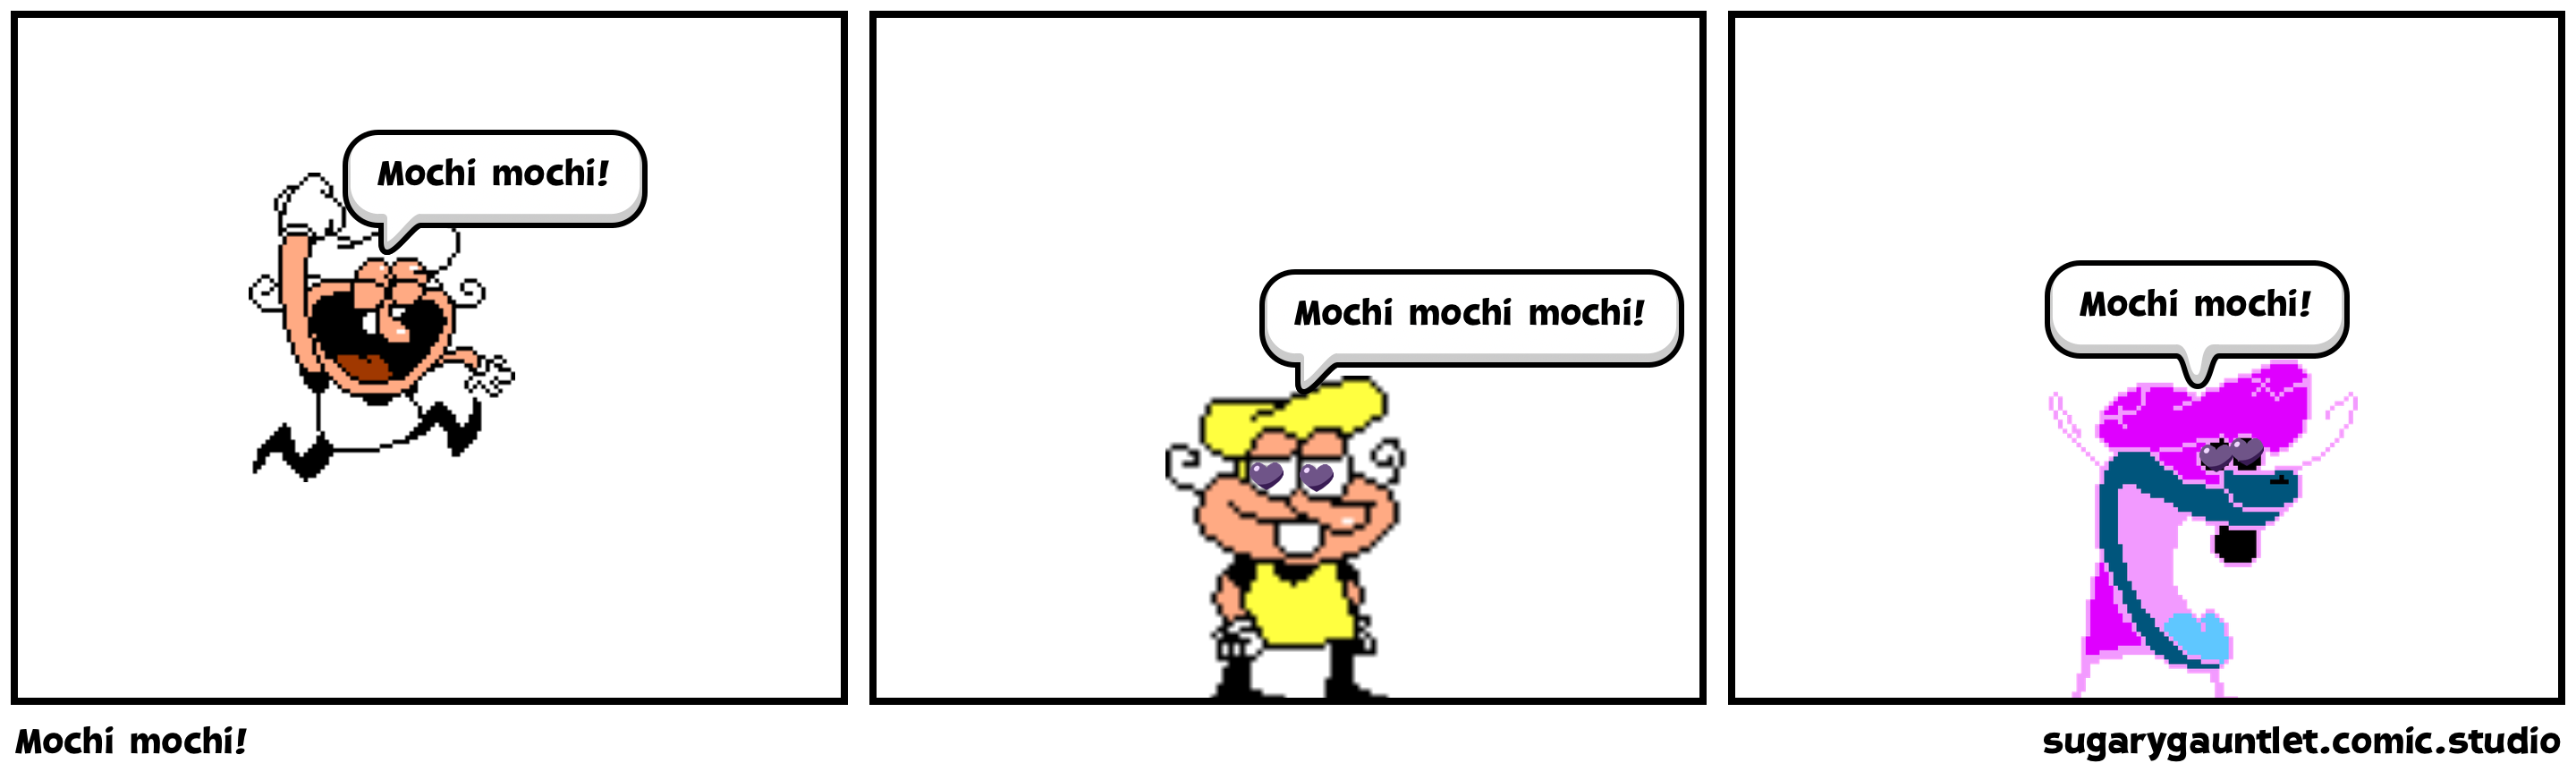 Mochi mochi!